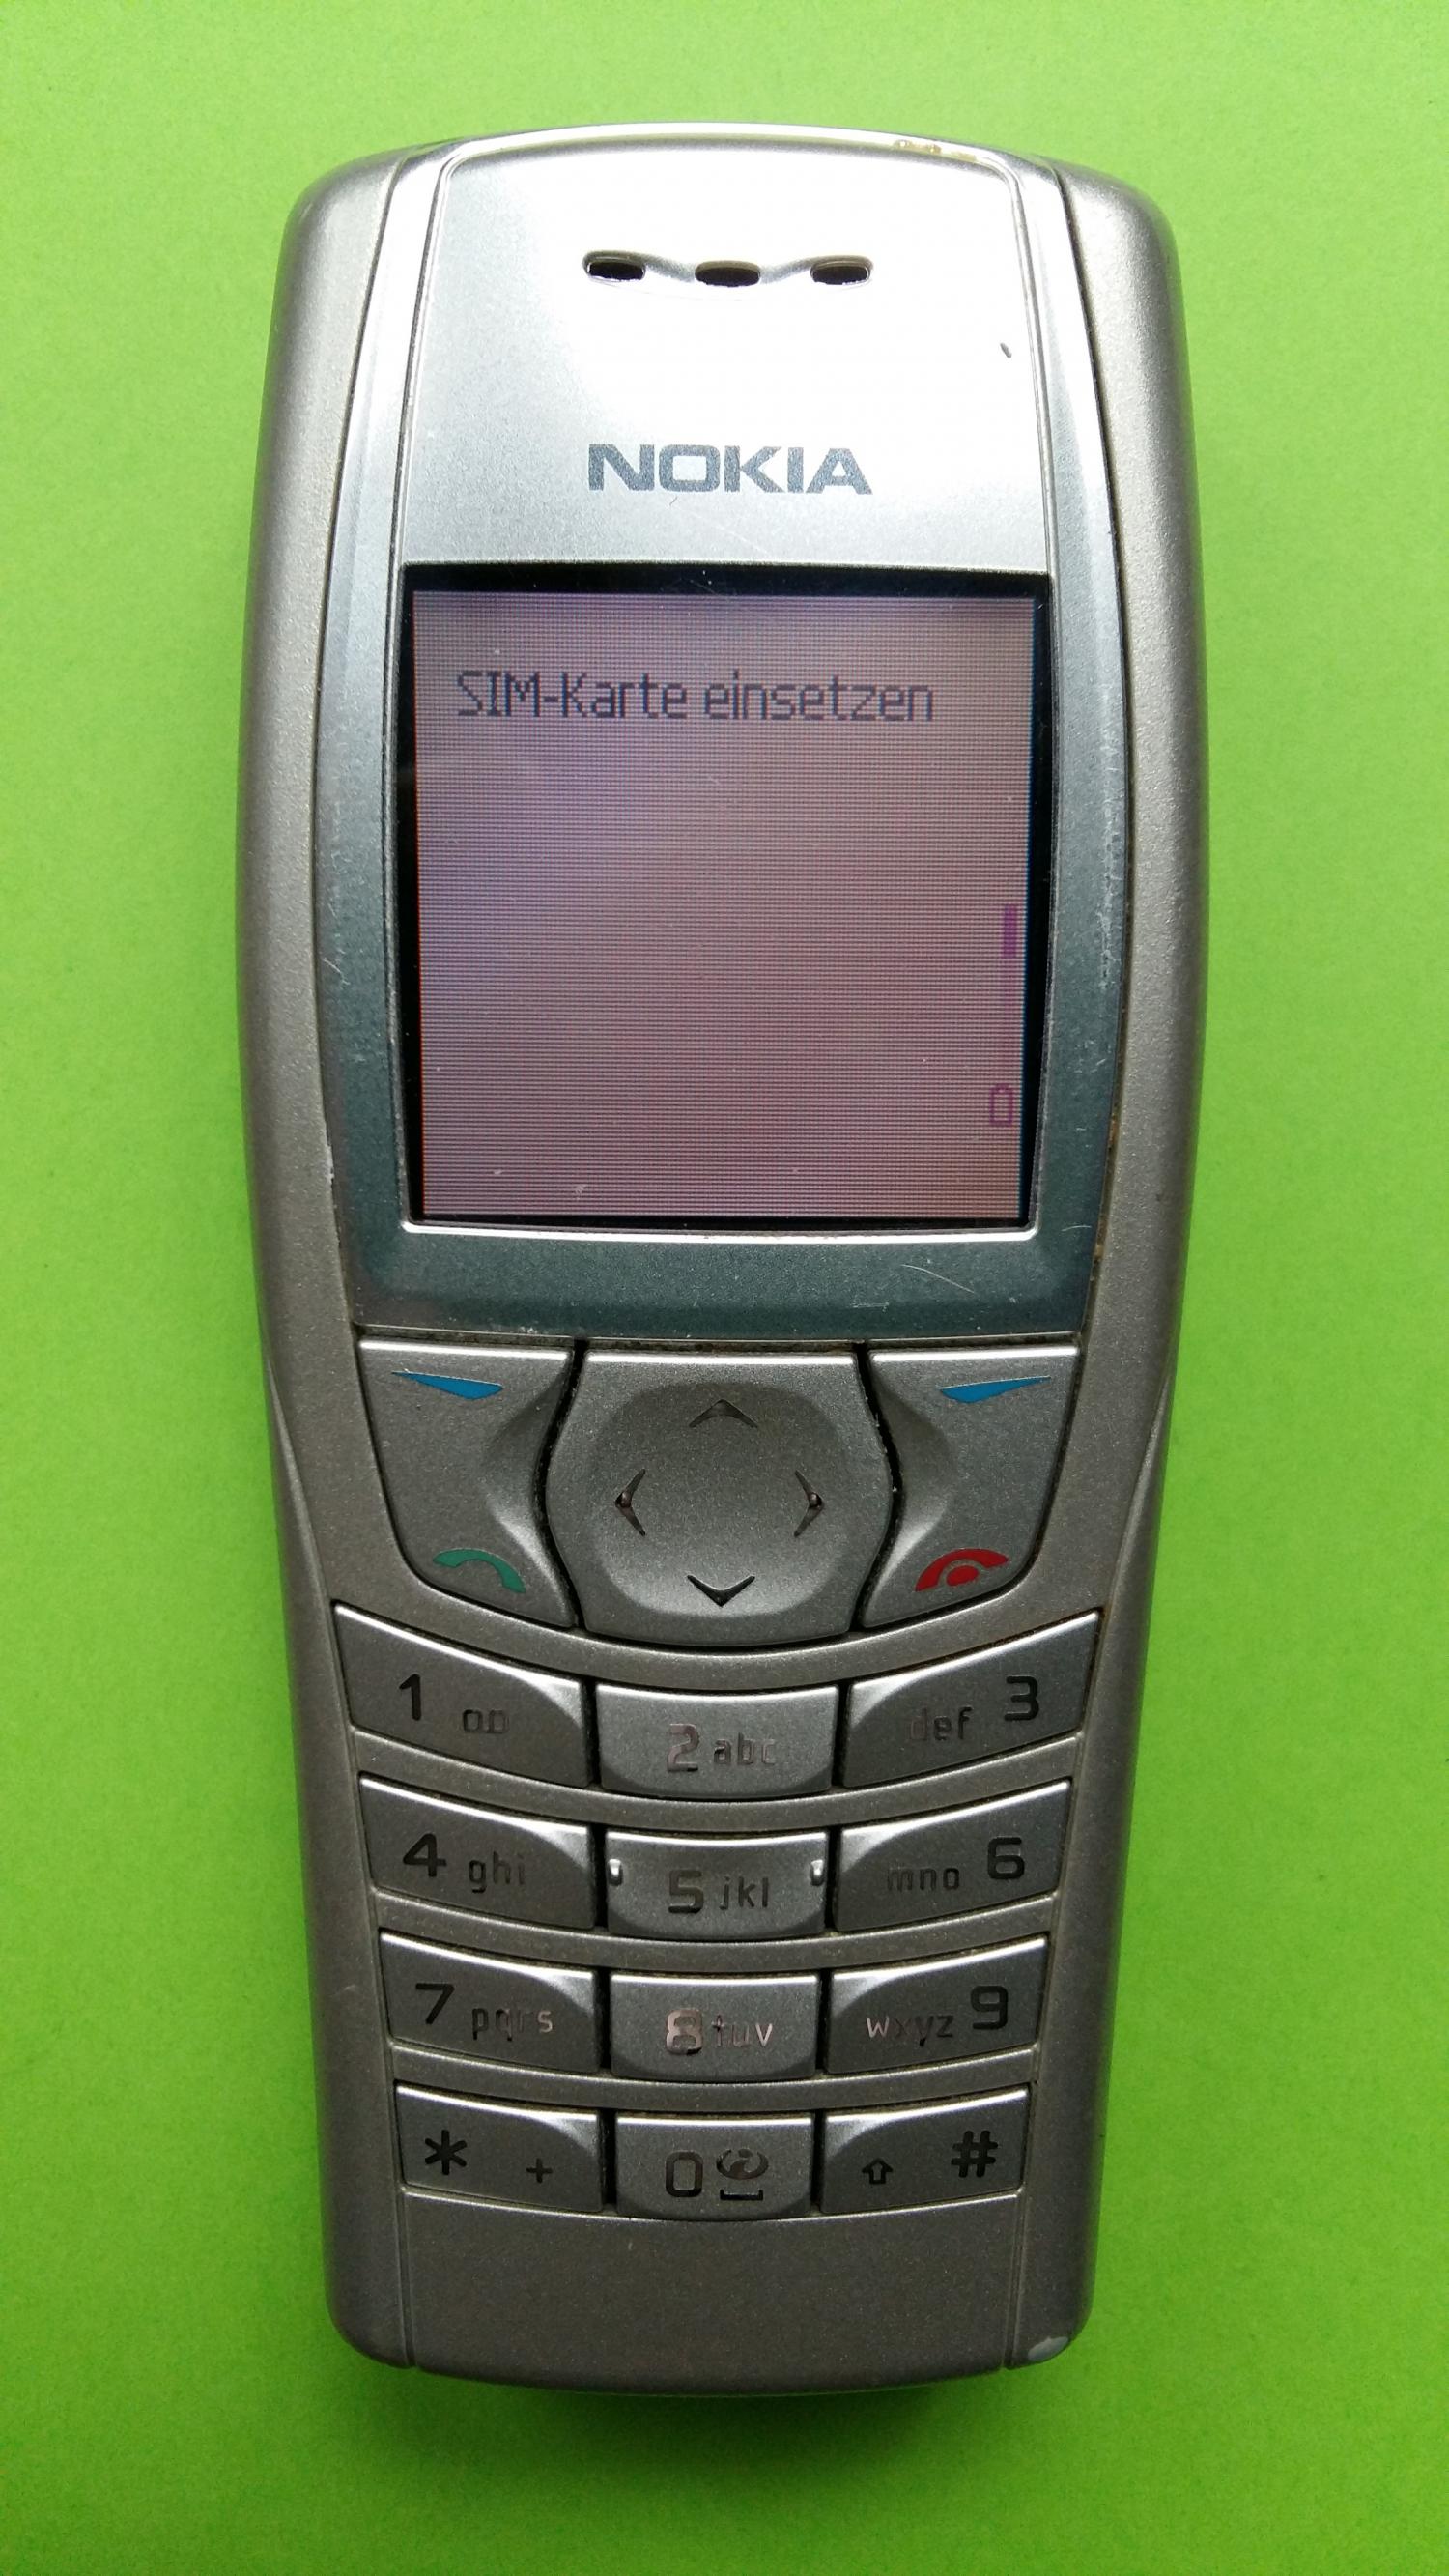 image-7316132-Nokia 6610i (12)1.jpg